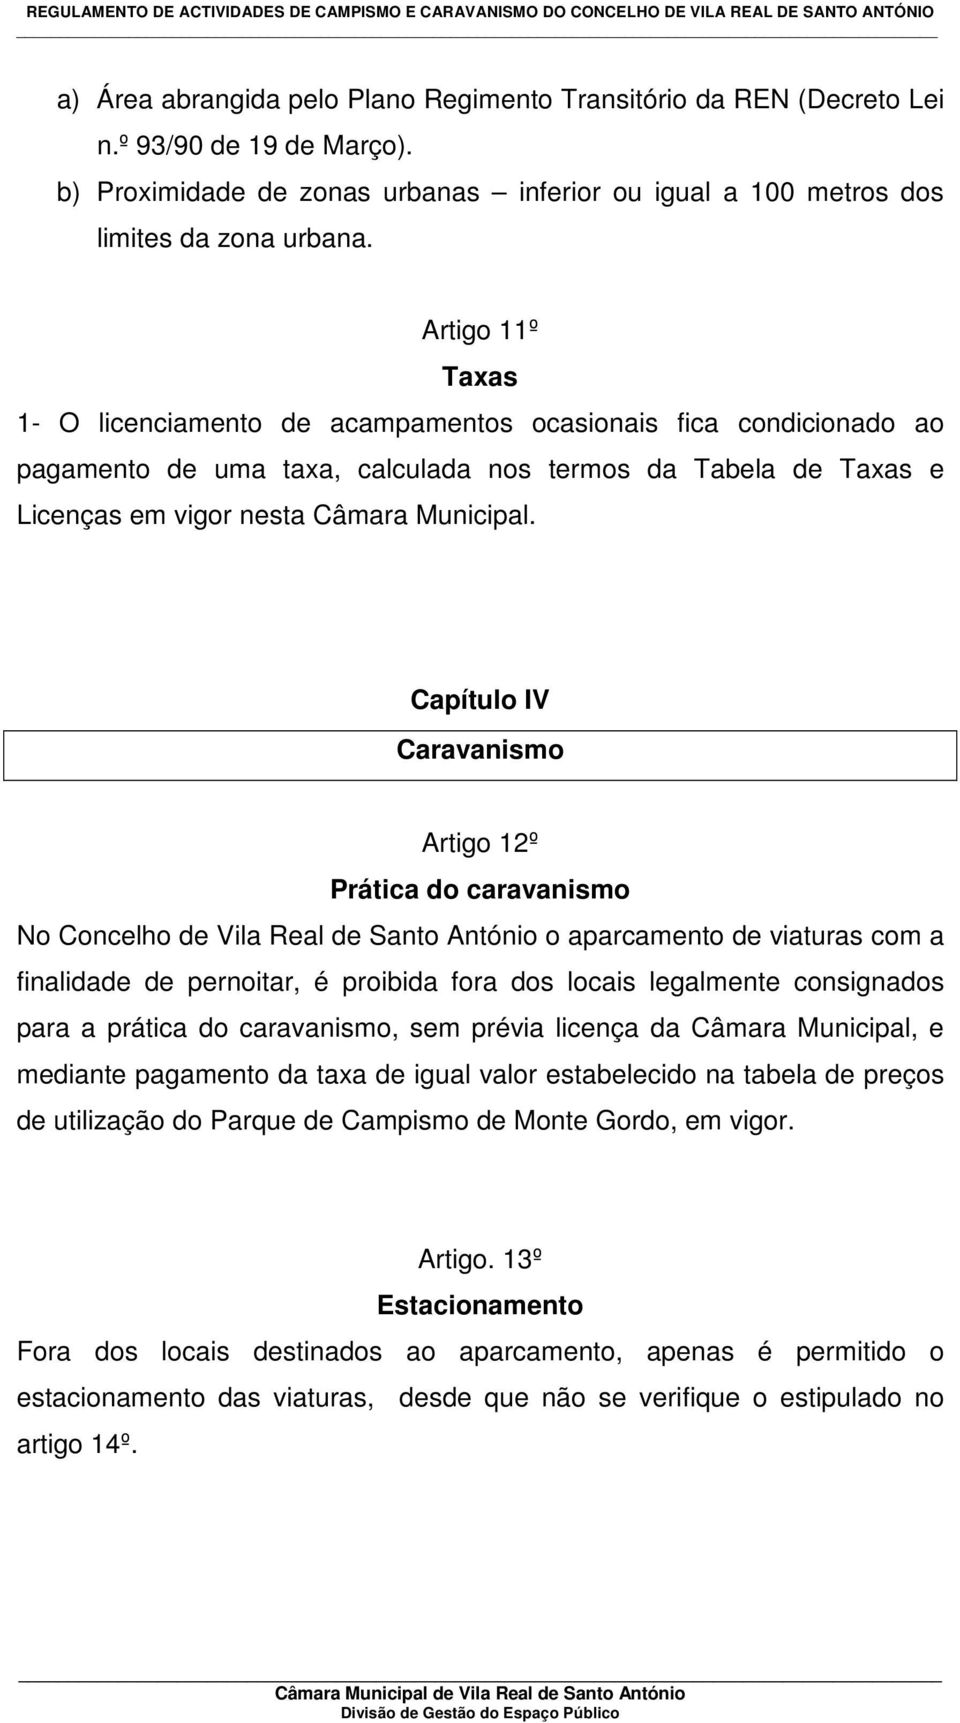 Capítulo IV Caravanismo Artigo 12º Prática do caravanismo No Concelho de Vila Real de Santo António o aparcamento de viaturas com a finalidade de pernoitar, é proibida fora dos locais legalmente